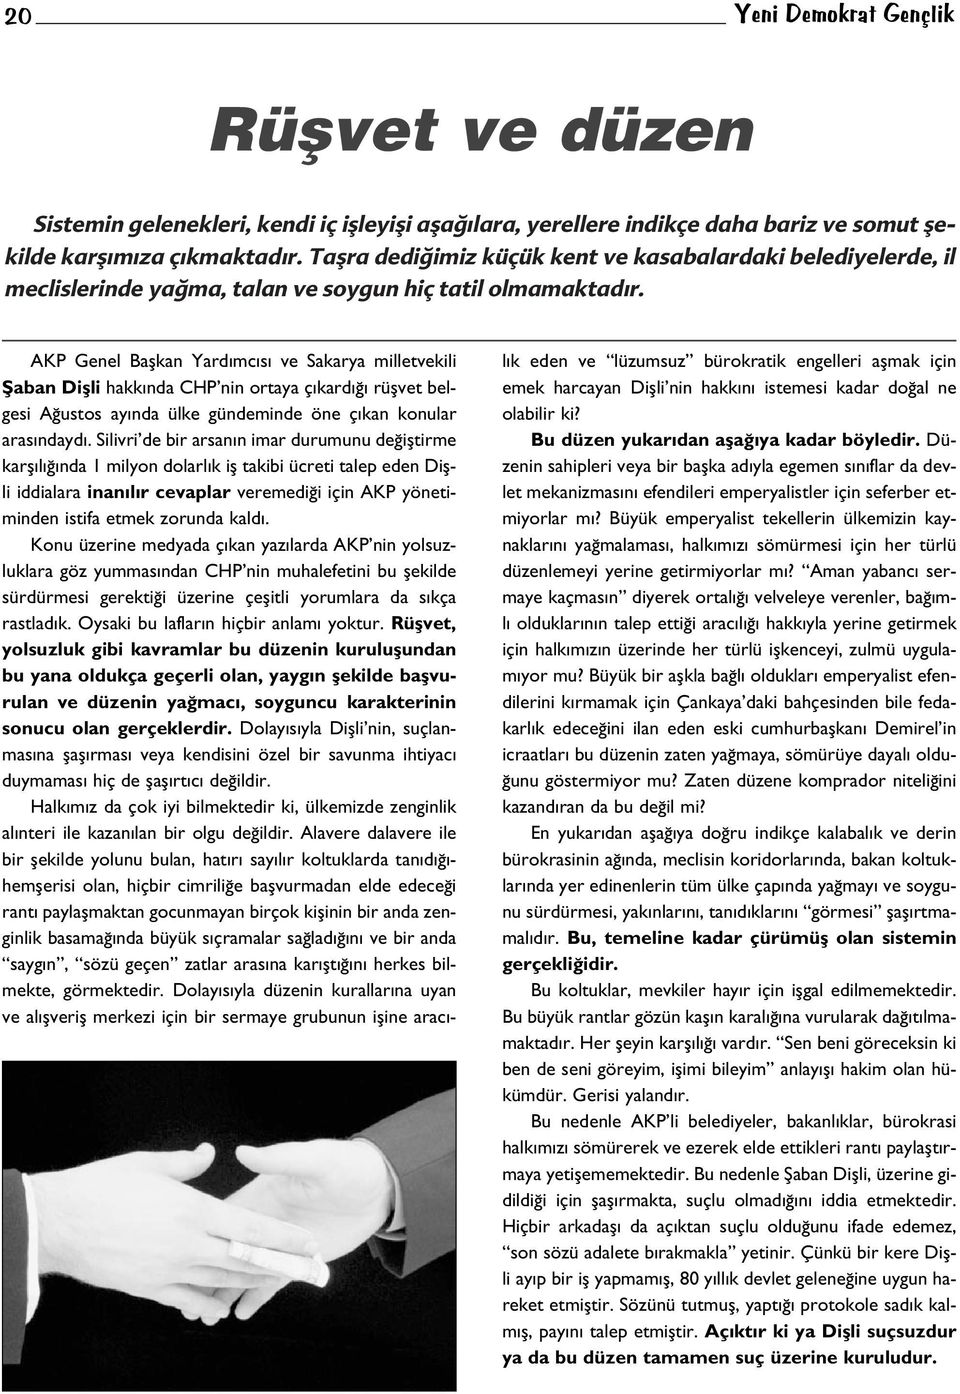 AKP Genel Baflkan Yard mc s ve Sakarya milletvekili fiaban Diflli hakk nda CHP nin ortaya ç kard rüflvet belgesi A ustos ay nda ülke gündeminde öne ç kan konular aras ndayd.